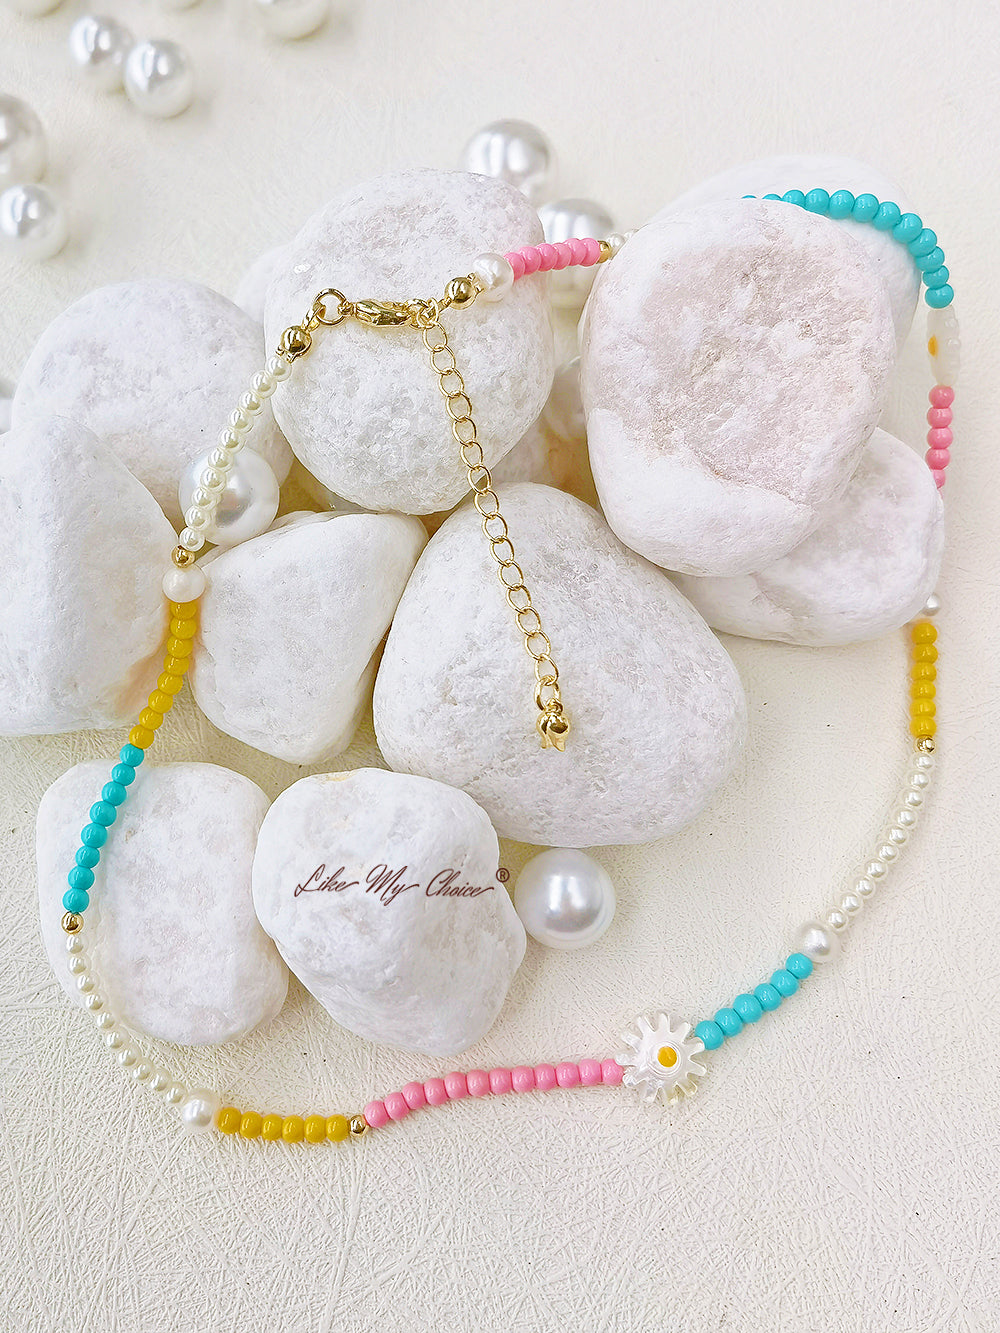 Handgefertigte bunte Perlenkette aus echten Perlen für den Sommer